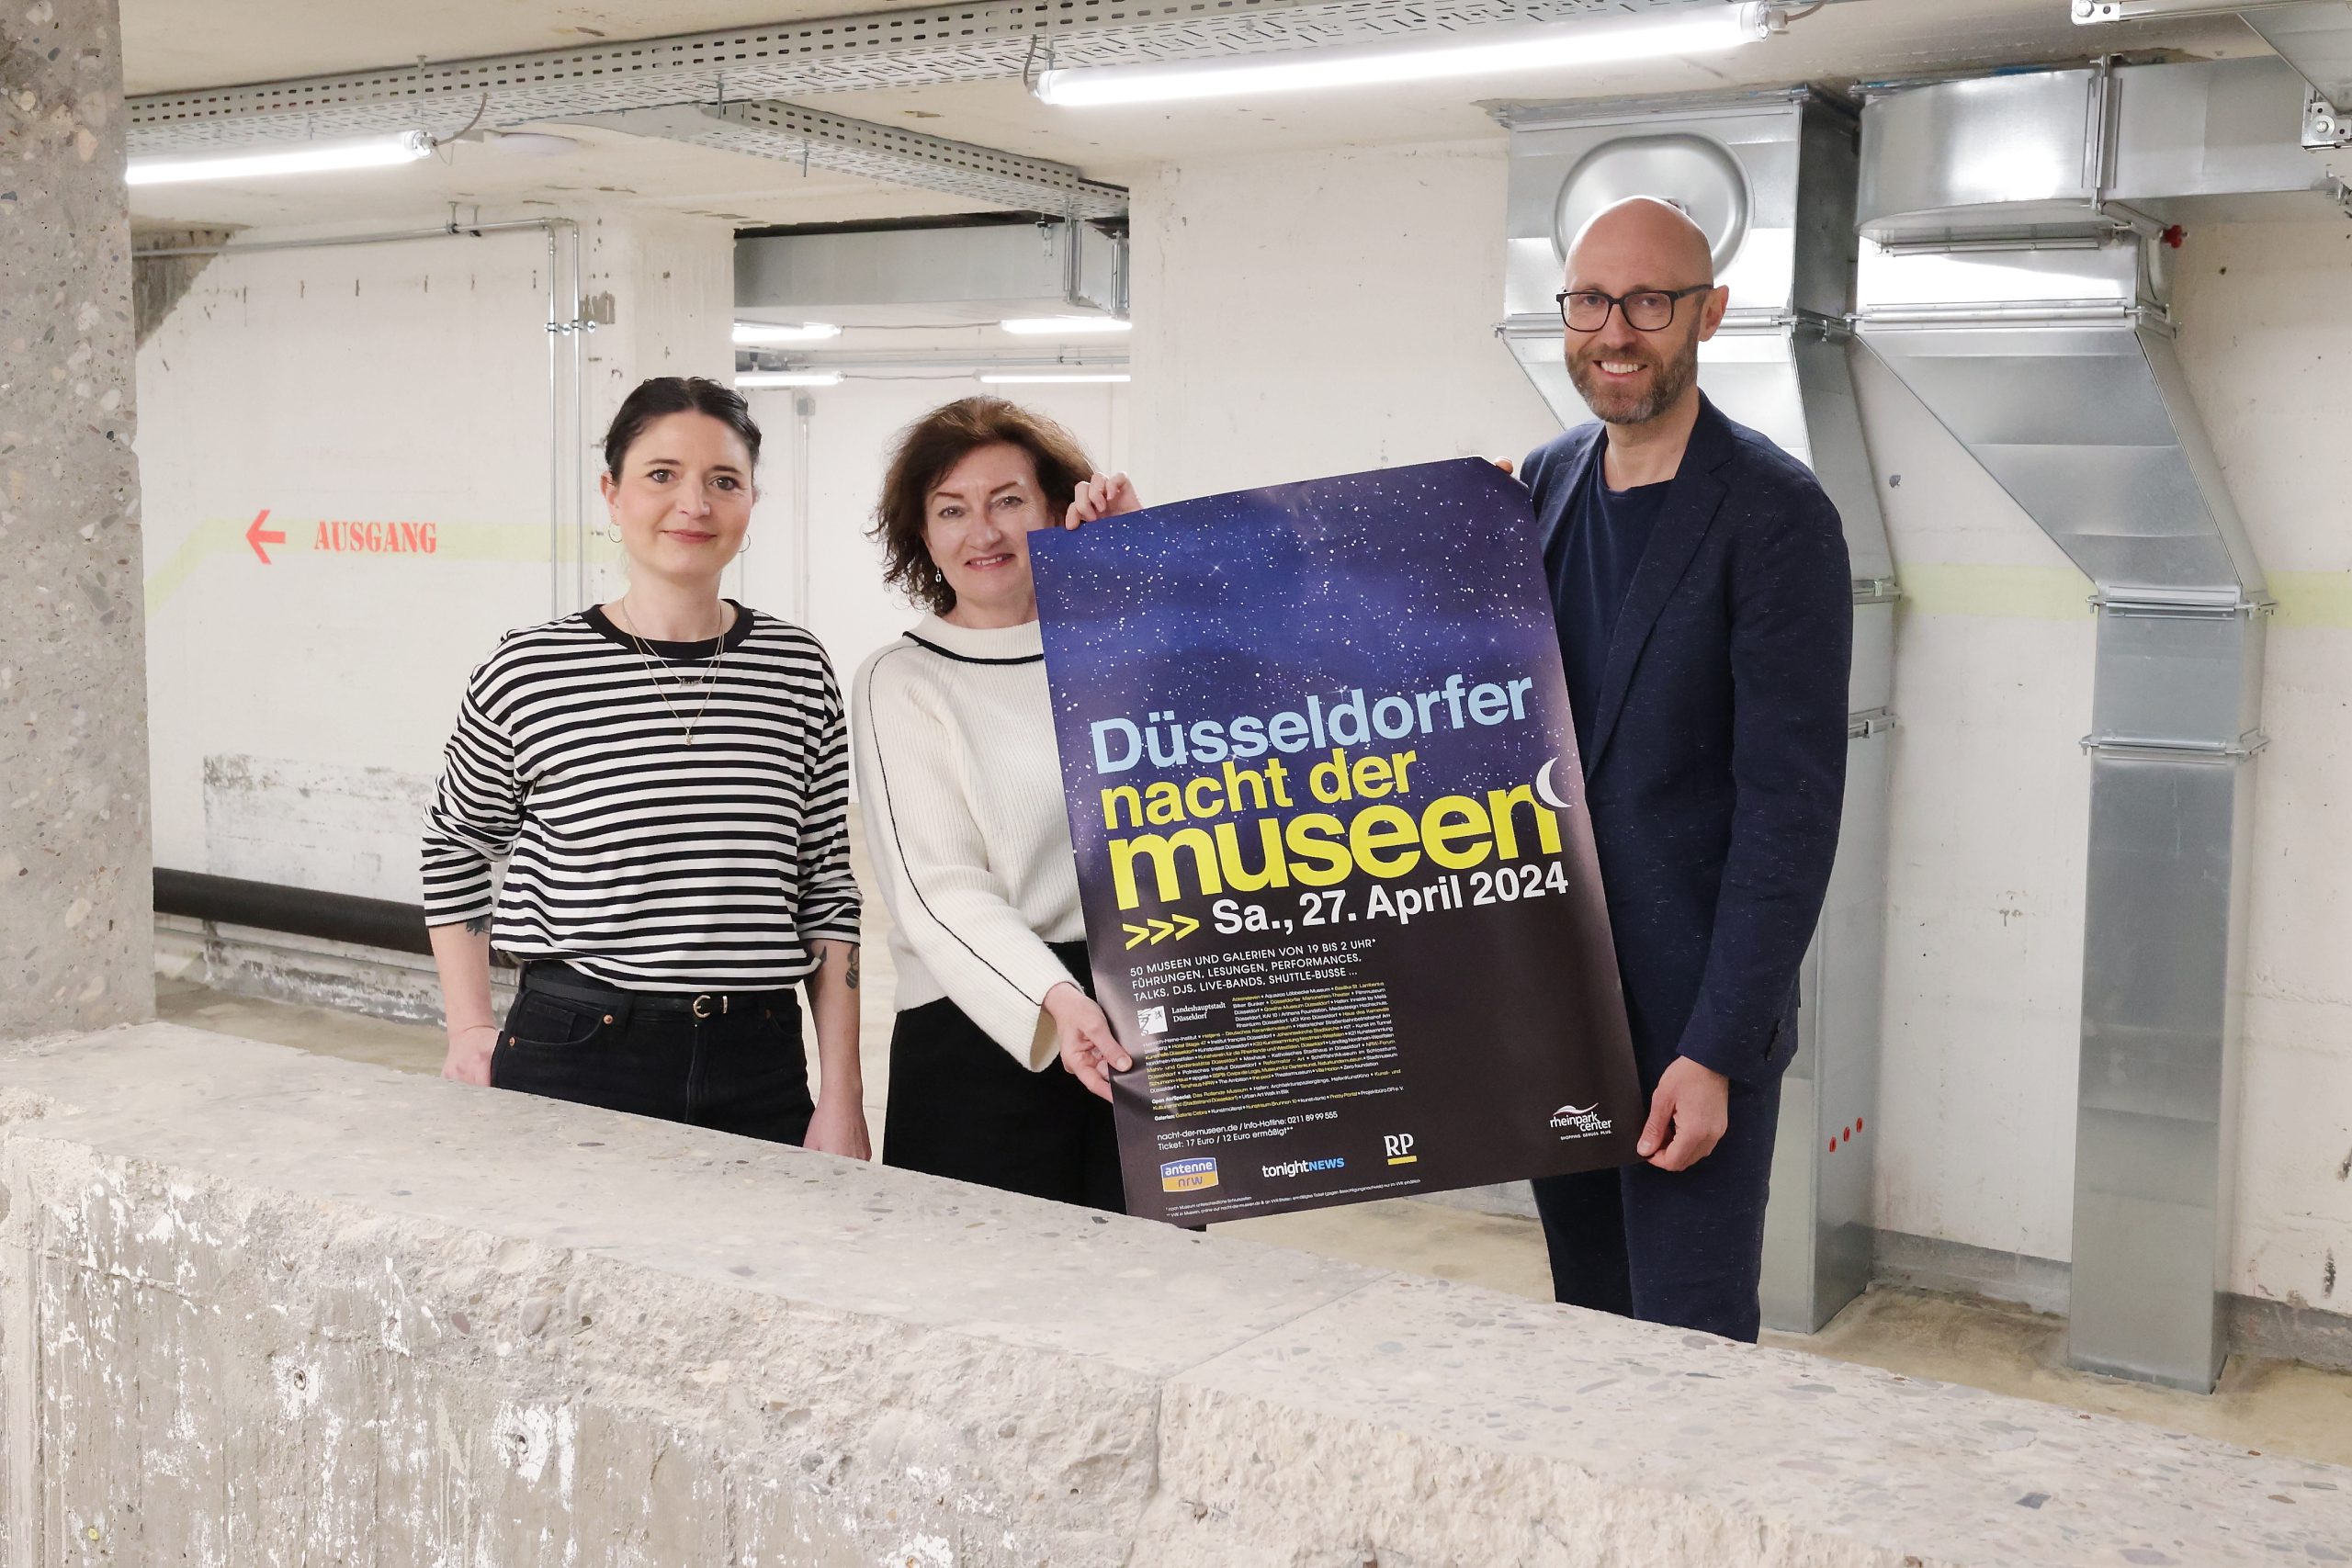 Nacht der Museen 2024 in Düsseldorf